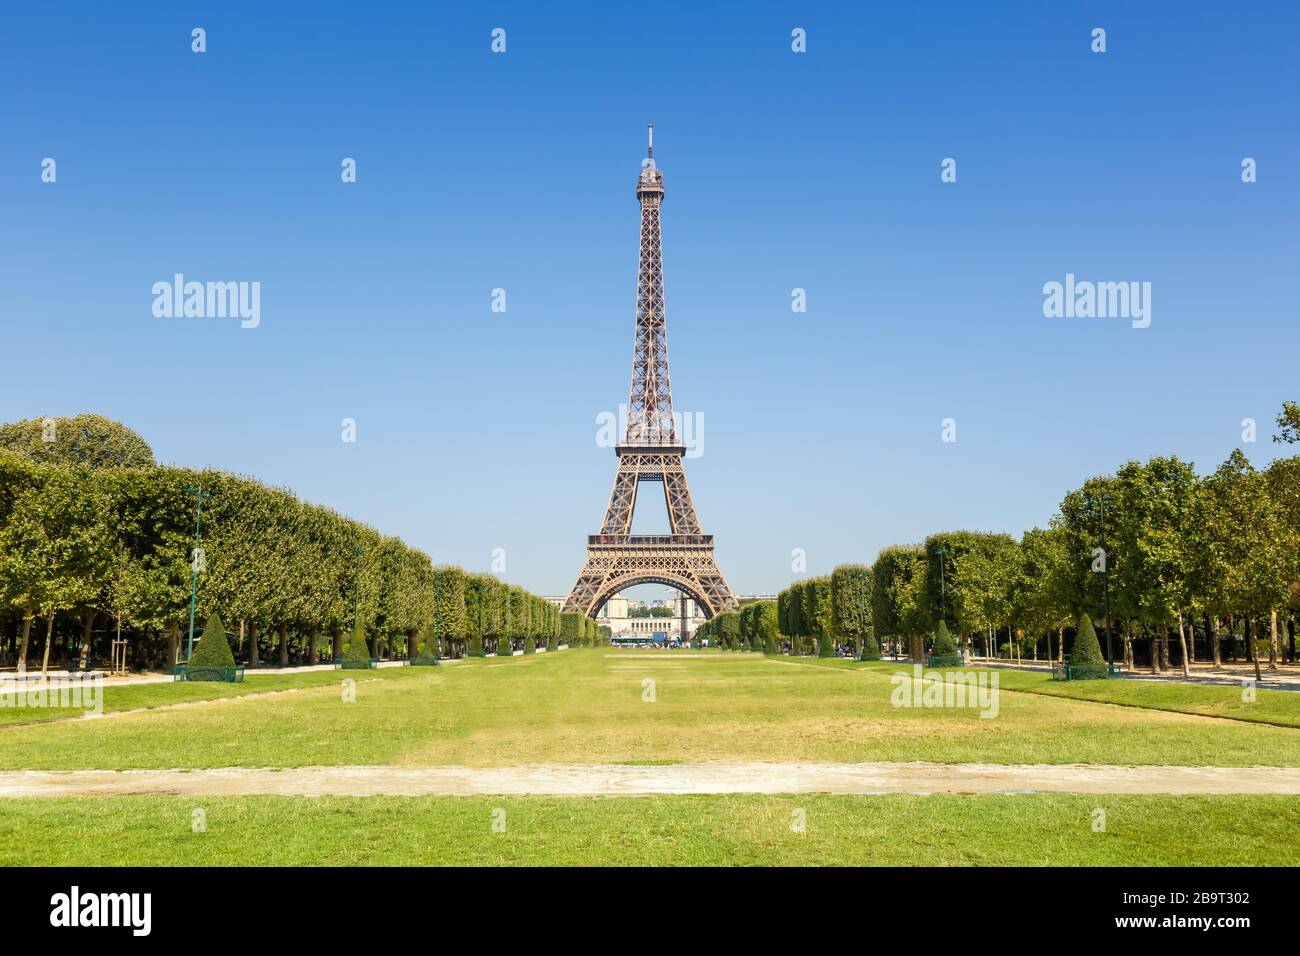 Paris Tour Eiffel France voyage touristique touristique touristique touristique Banque D'Images